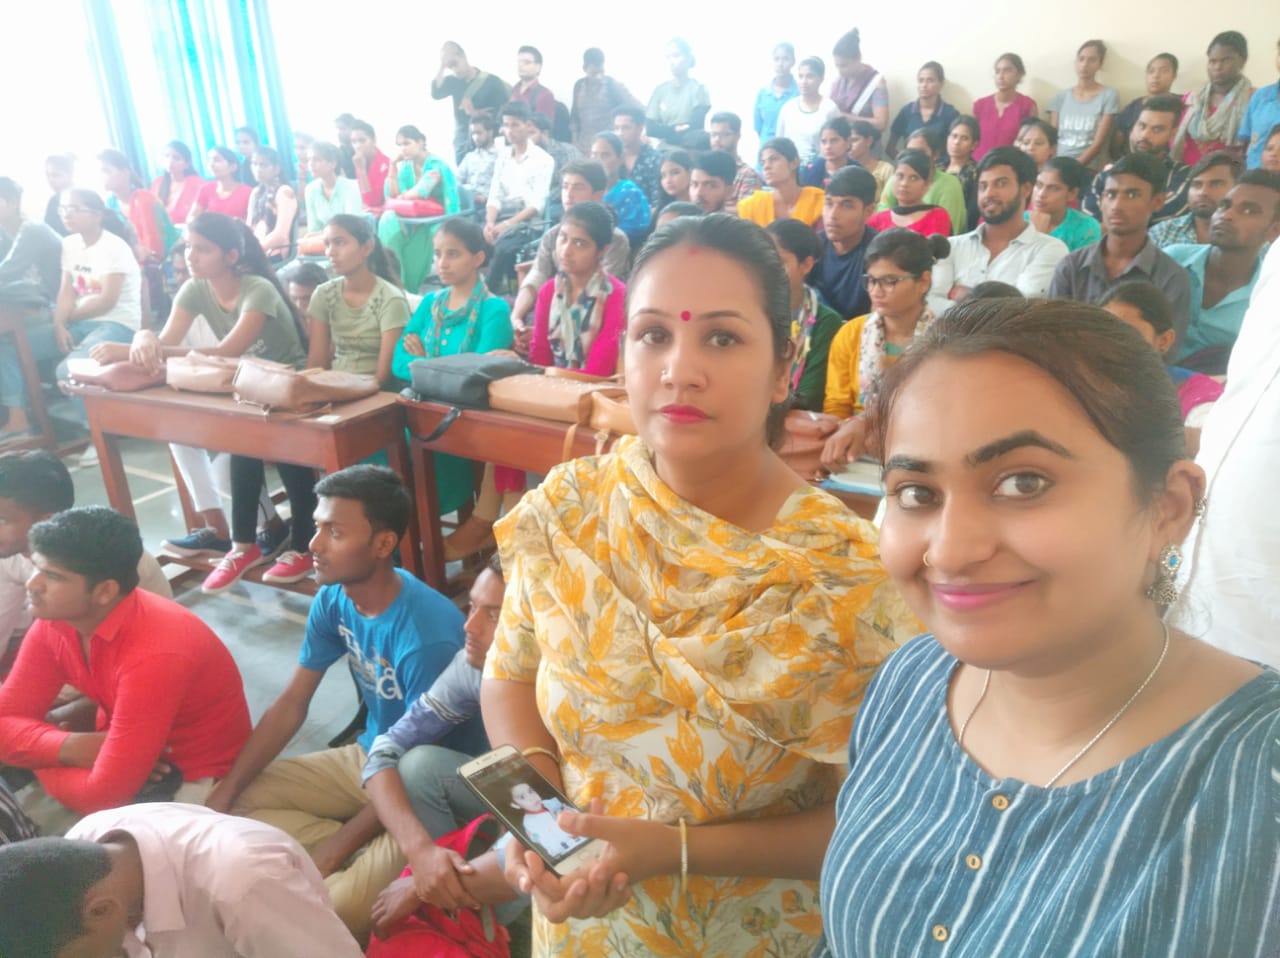 राजकीय महाविद्यालय तिगांव में फिट इंडिया मूवमेंट का एक कार्यक्रम जो पीएम मोदी के द्वारा इंदिरा गांधी स्टेडियम में चला उसका दिल्ली से सीधा प्रसारण महाविद्यालय के समस्त विद्यार्थियों को दिखाया गया